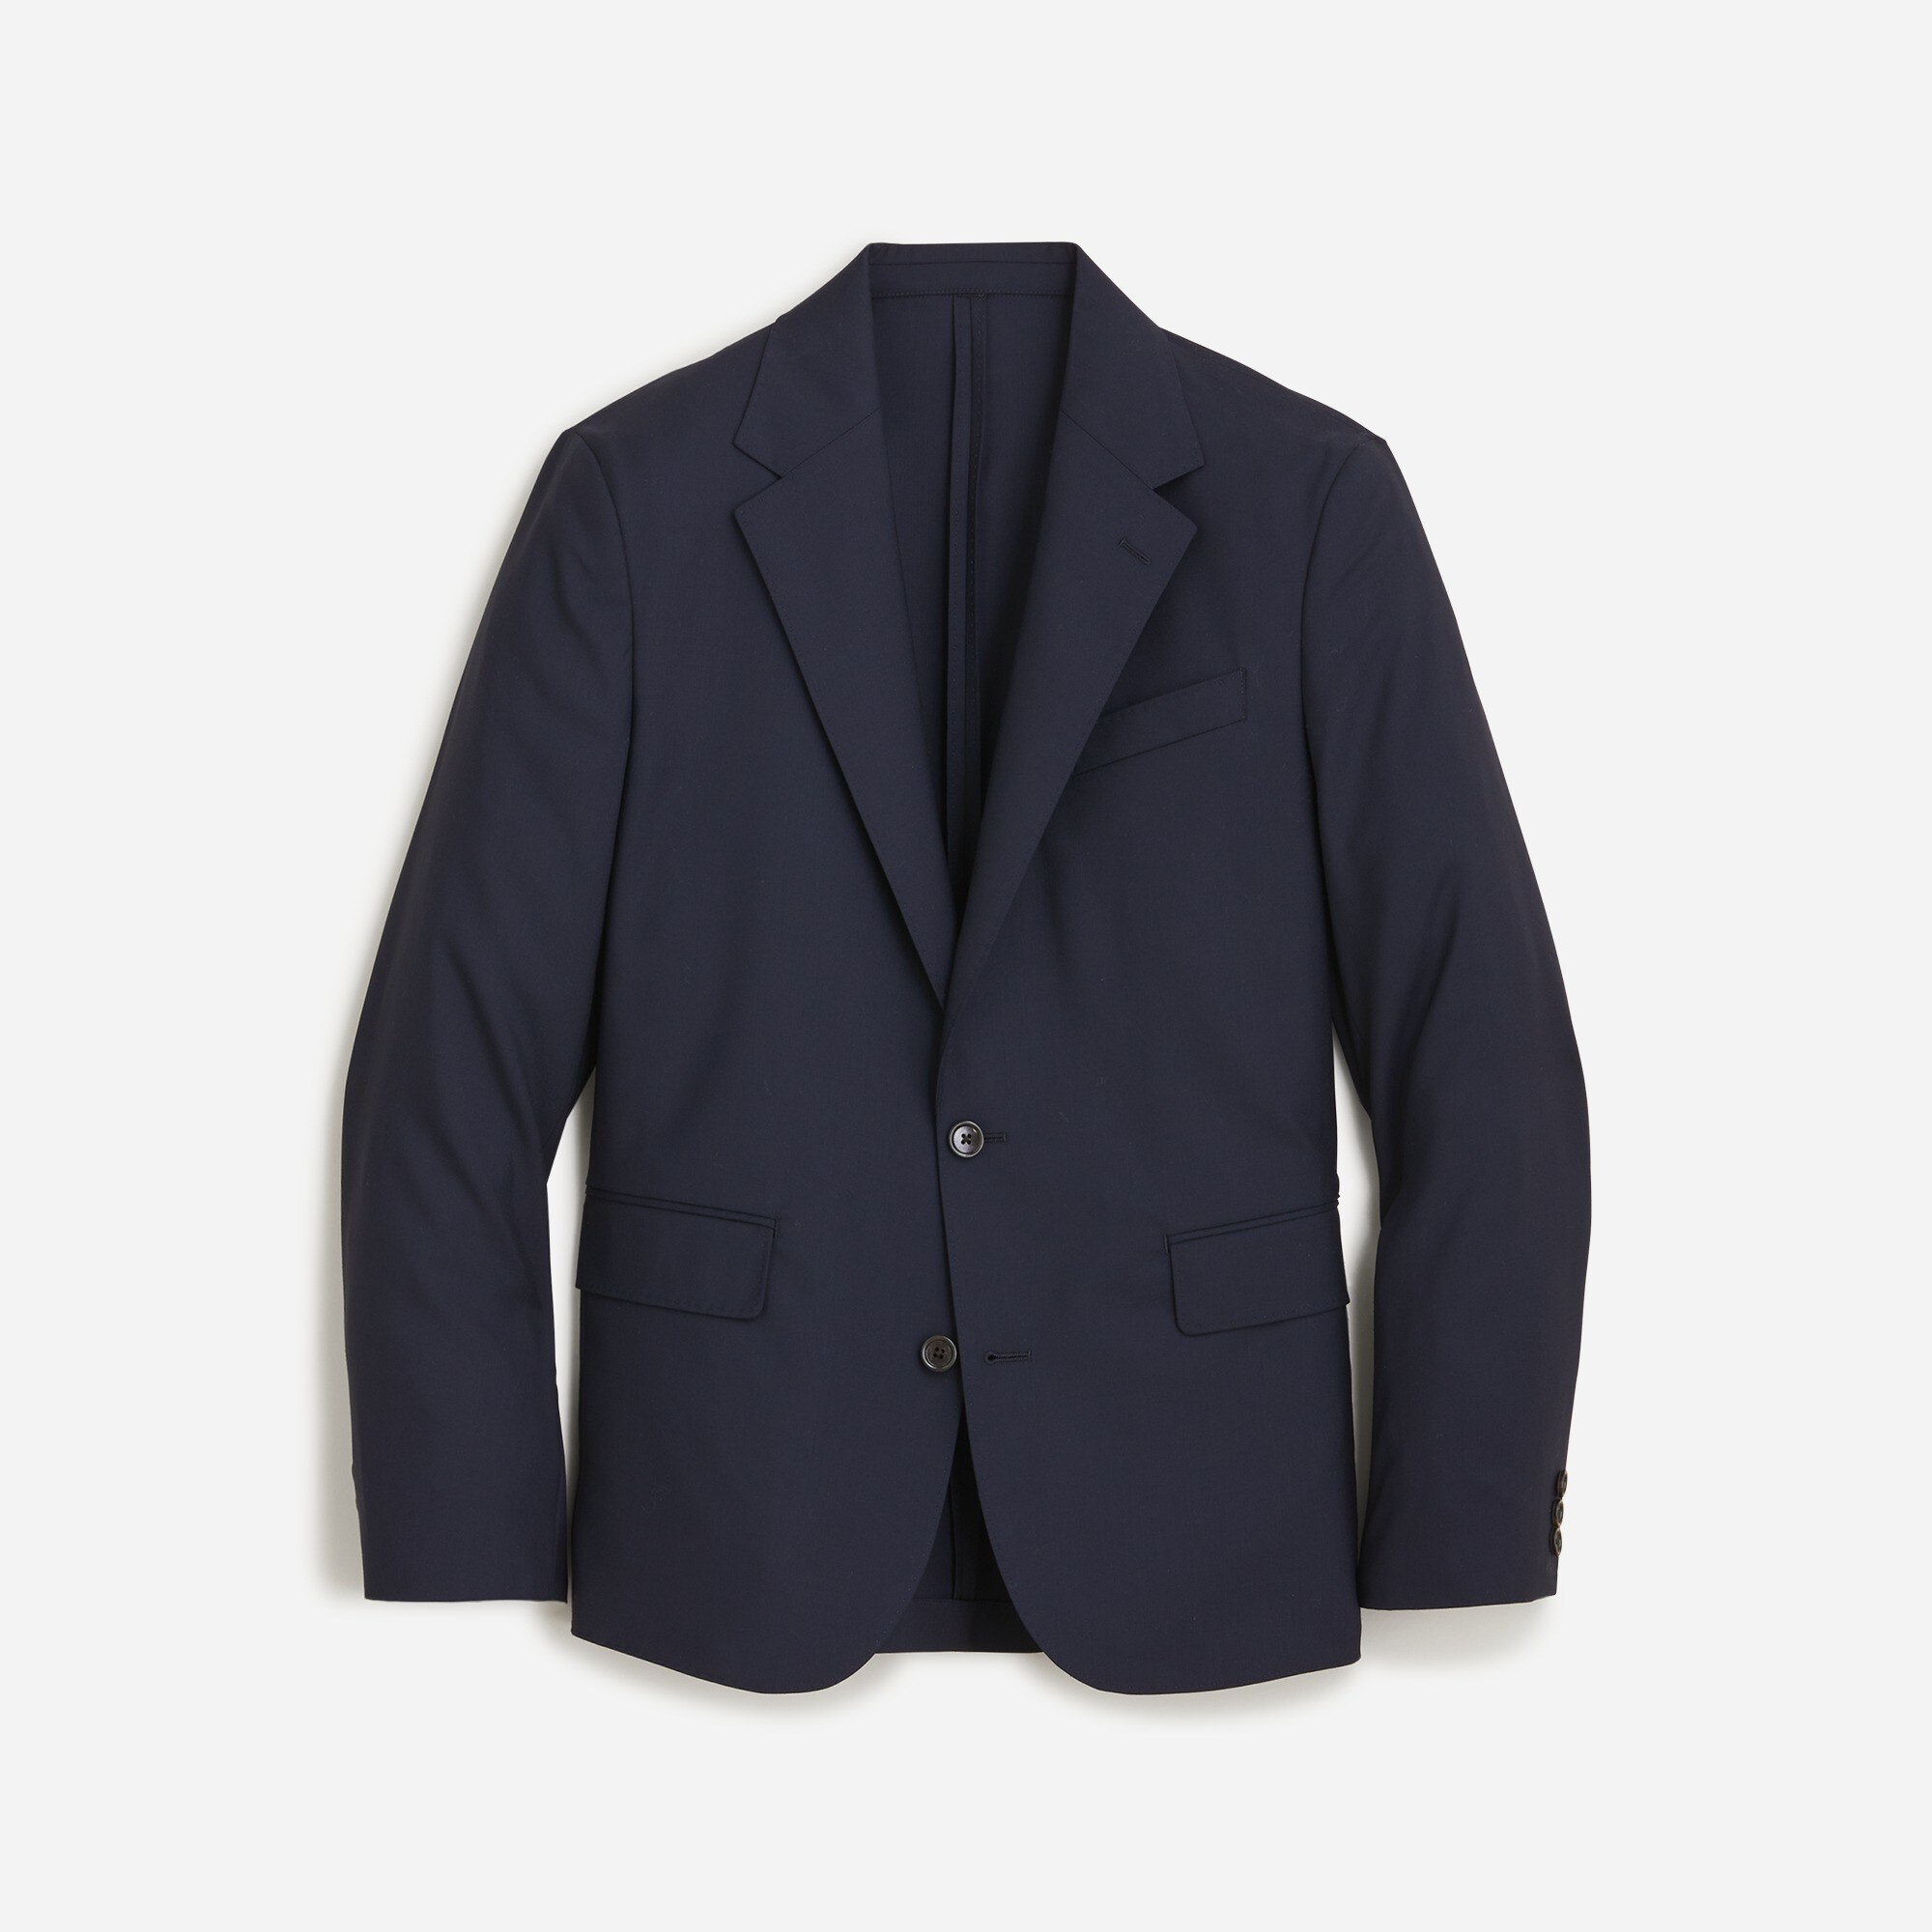  Kenmare suit jacket in Italian wool